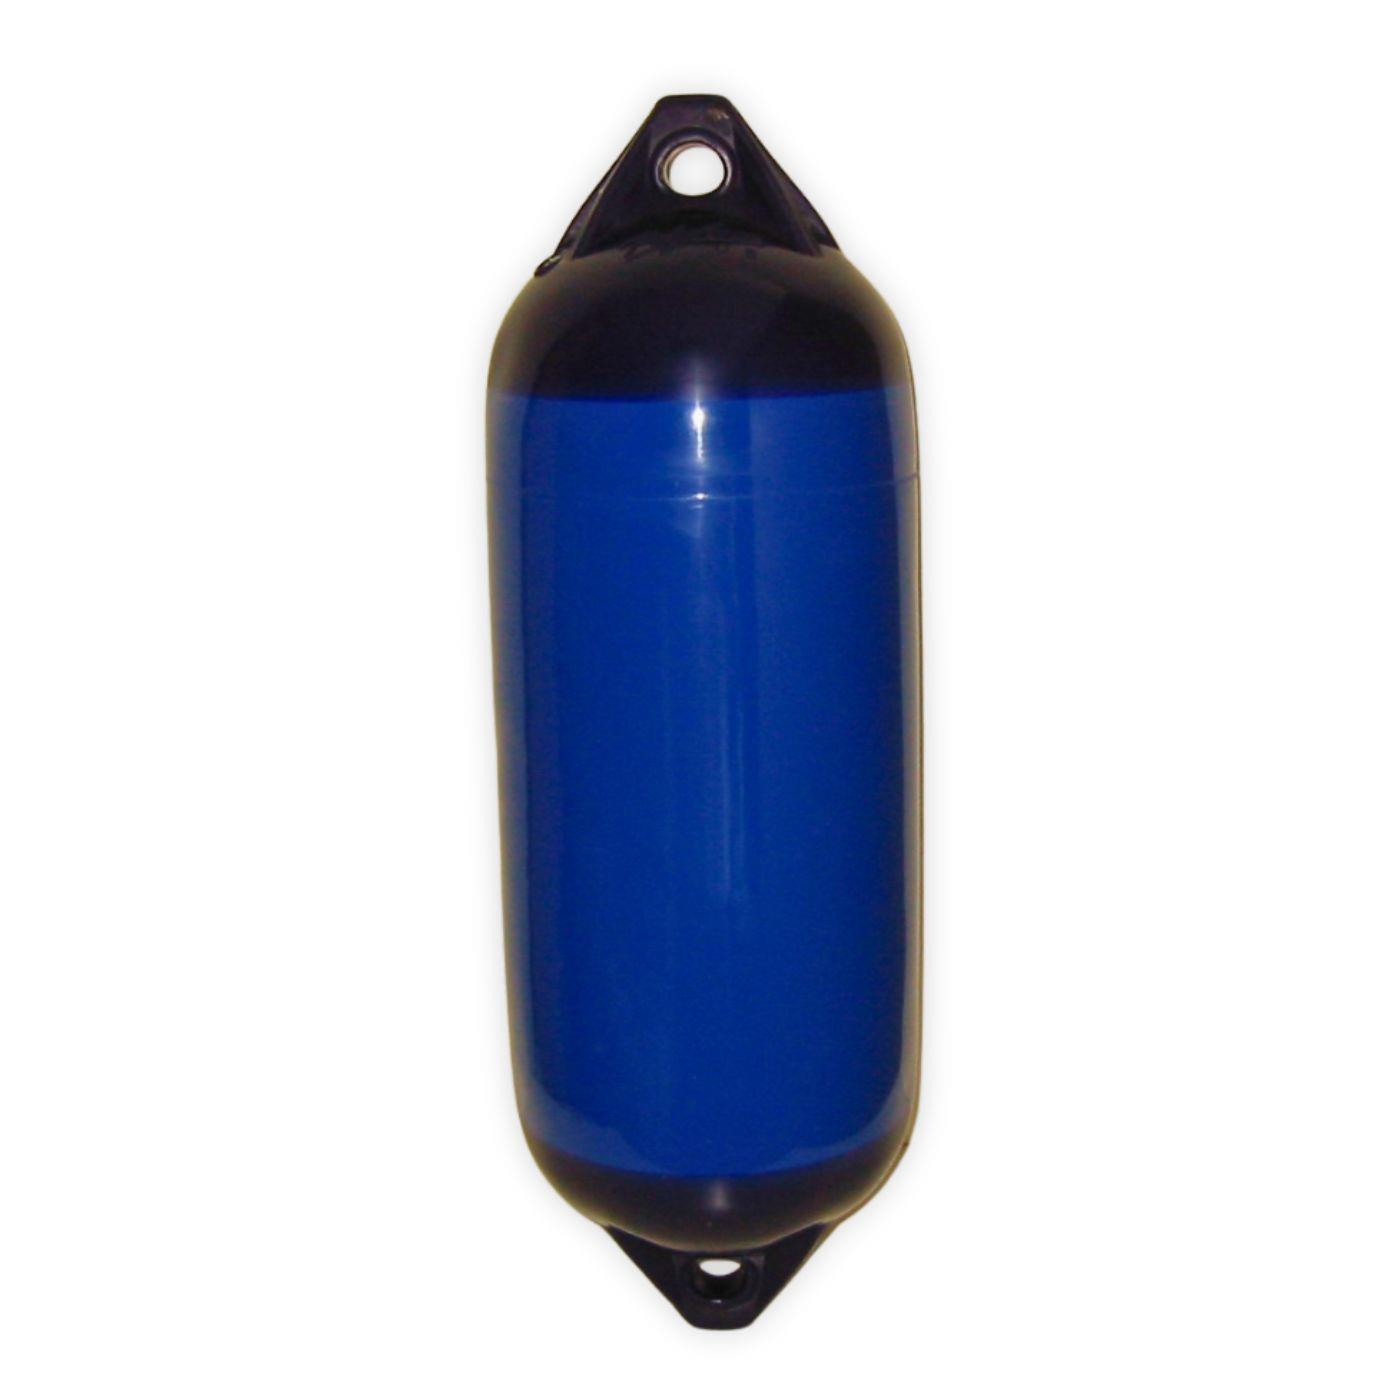 Polyform F02 - Langfender in blau/schwarz, 660 x 220 mm